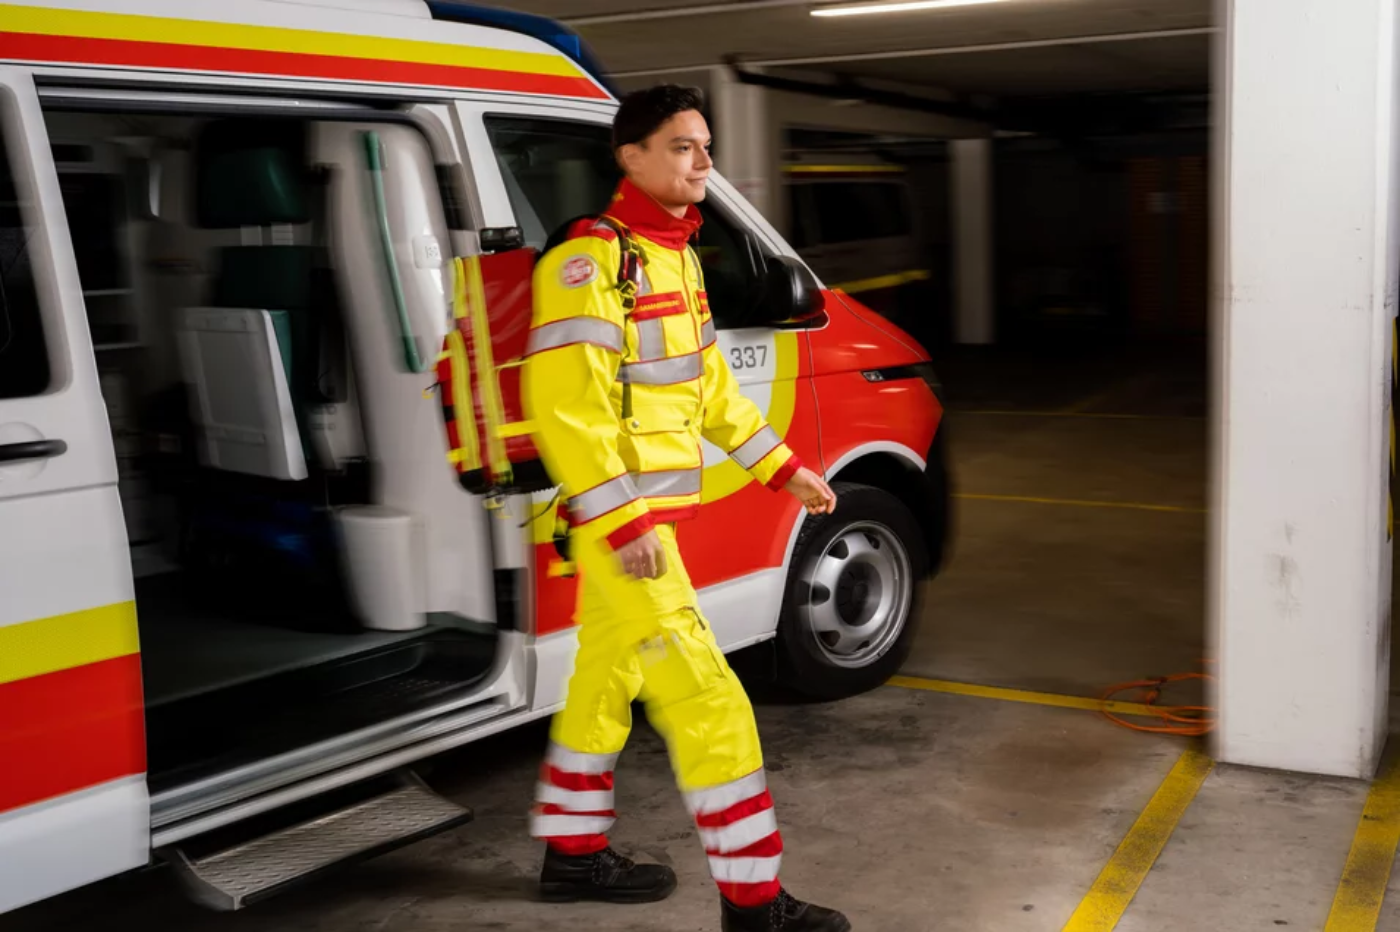 Ein Zivildiener in Uniform des Samariterbundes Österreichs ist aus einem Rettungswagen ausgestiegen, er geht vom Rettungswagen weg, im Hintergrund ist der Rettungswagen zu sehen